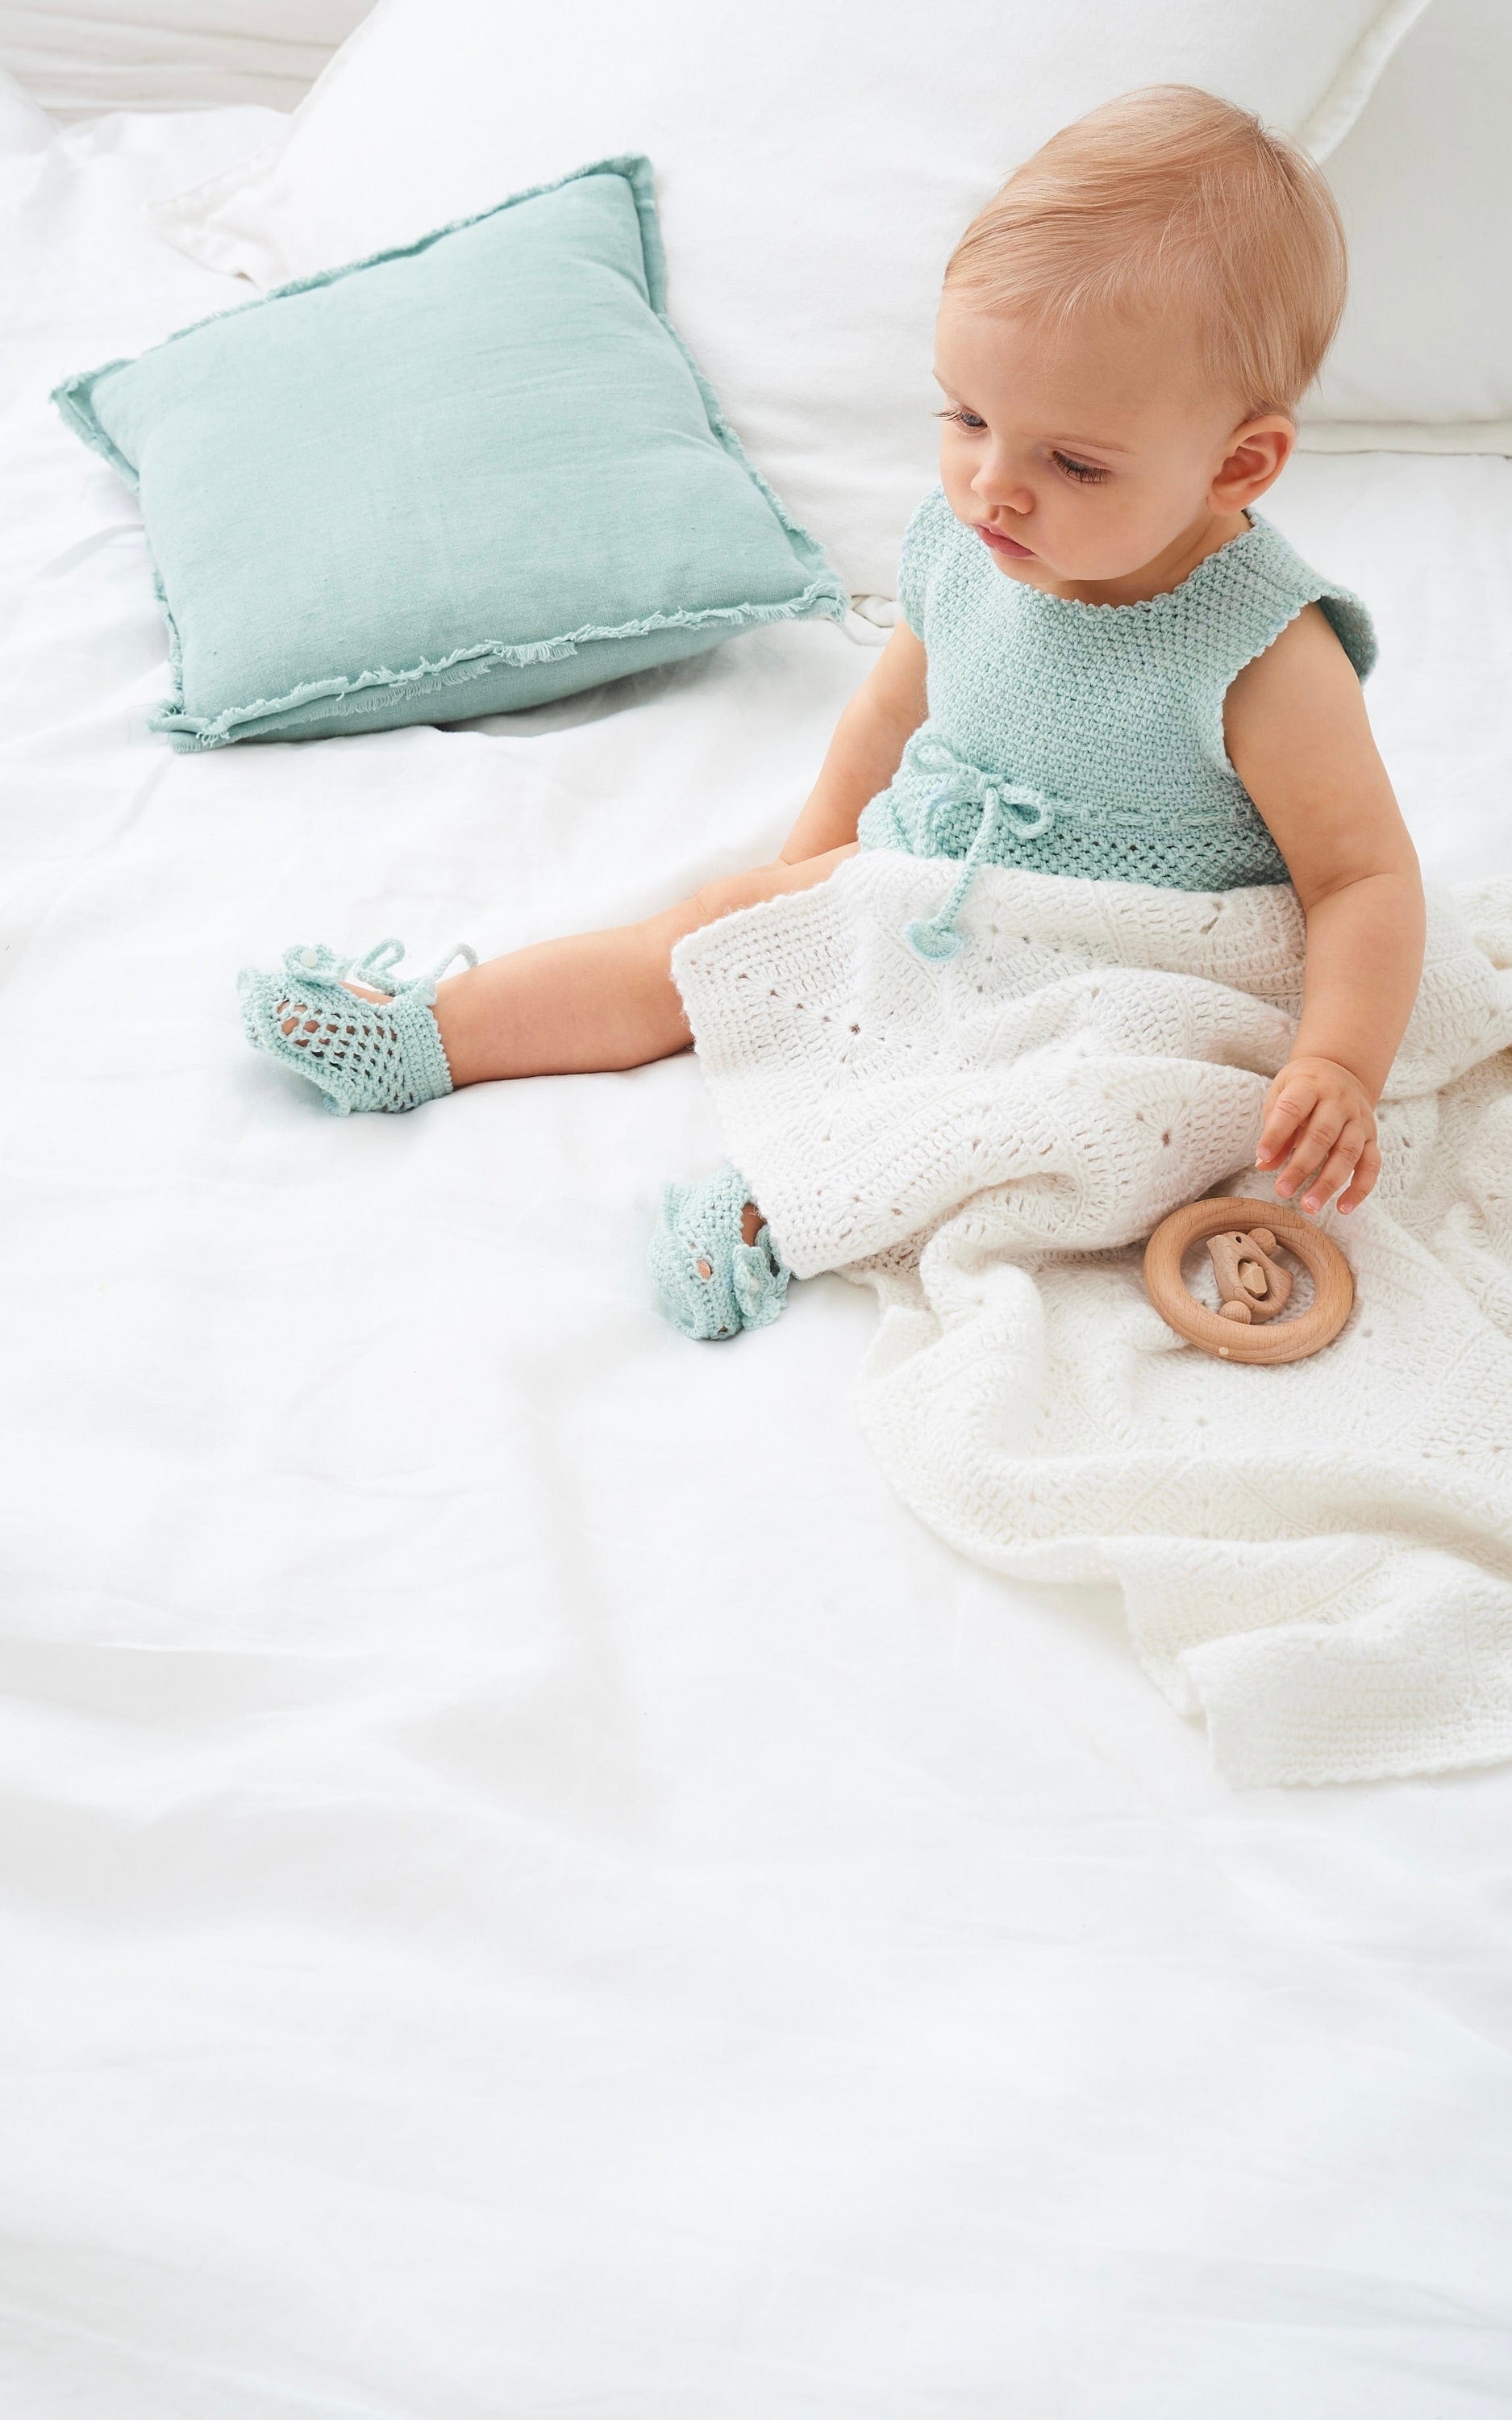 Baby Decke - ECOPUNO - Häkelset von LANA GROSSA jetzt online kaufen bei OONIQUE